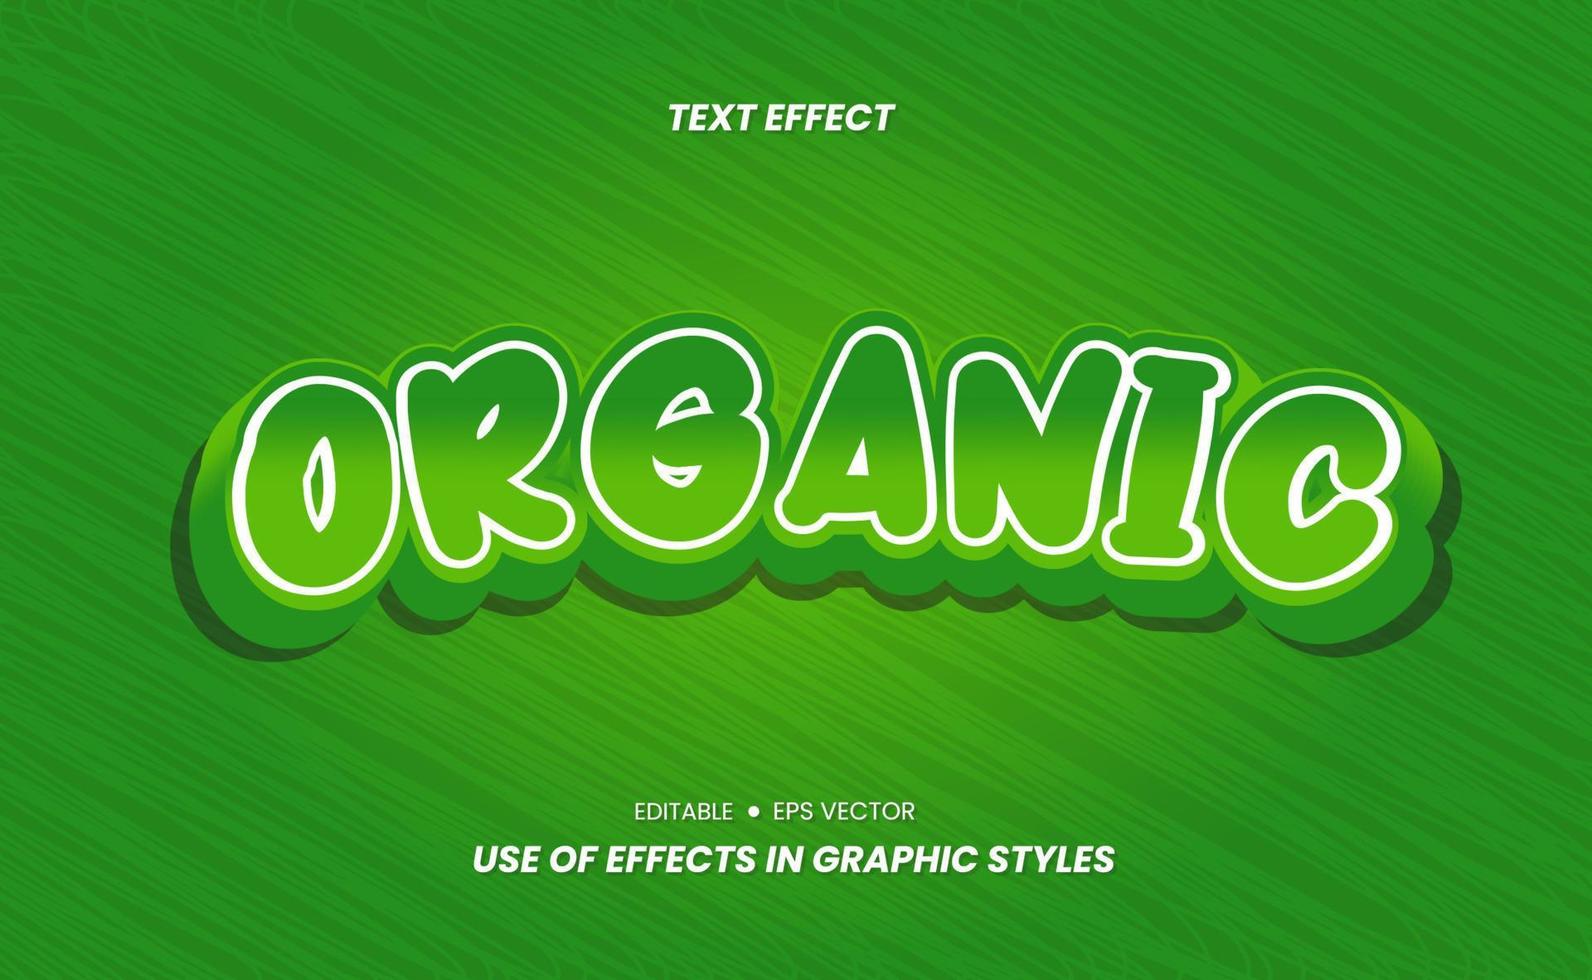 tekst effect sticker met kleur en 3d ontwerp vector